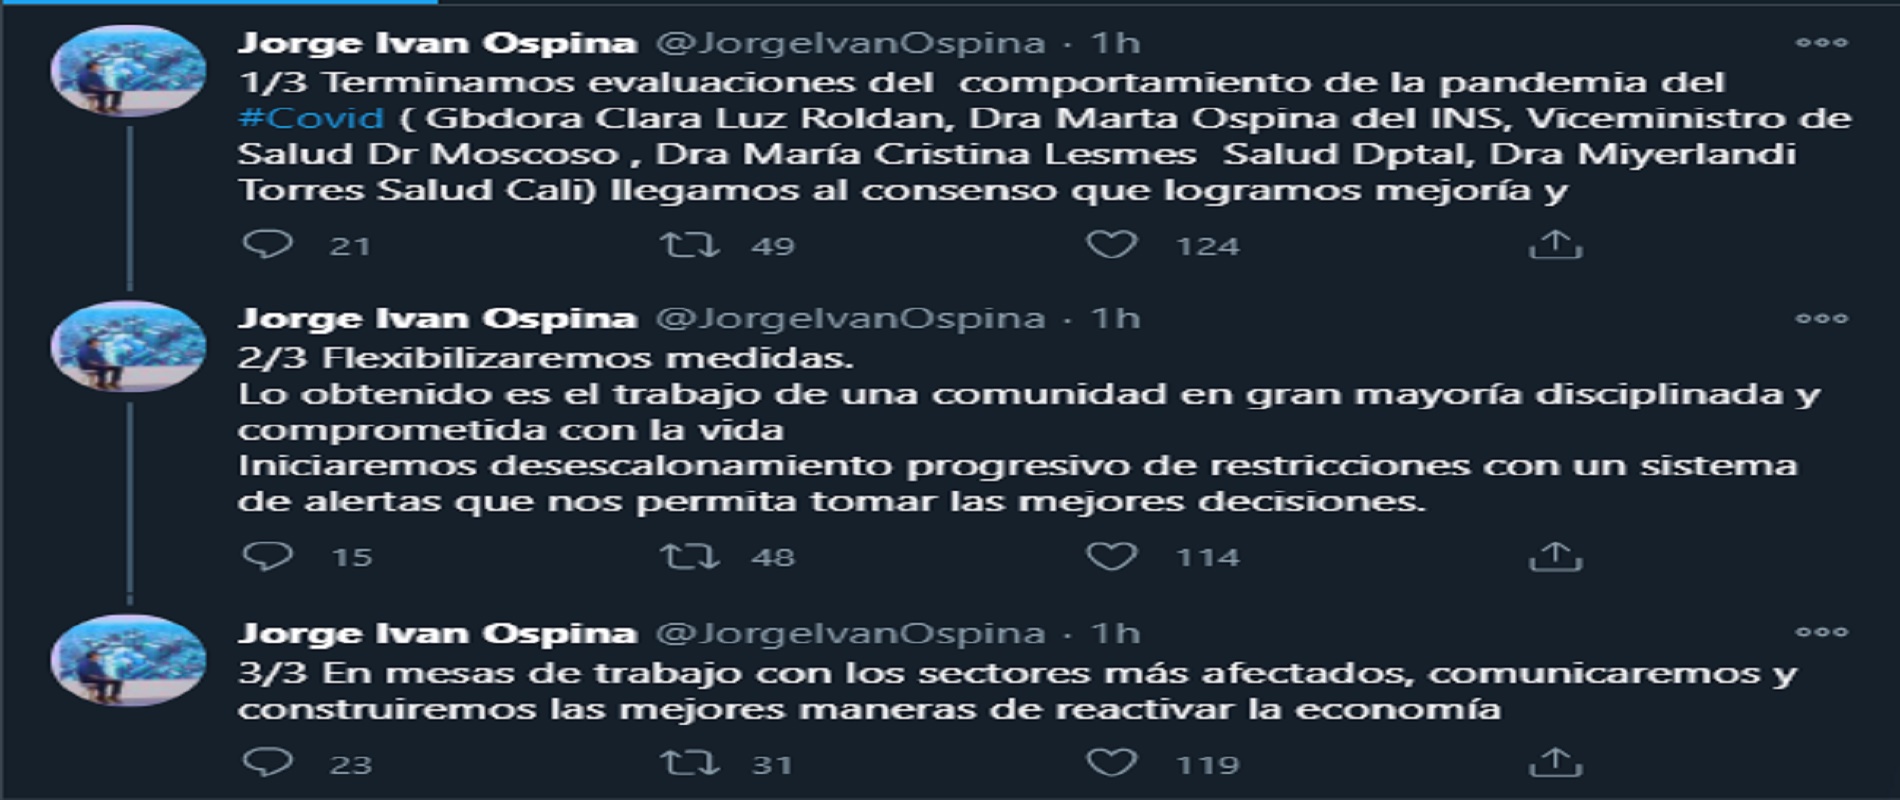 Jorge Iván Ospina, alcalde de Cali, anunció medidas para flexibilizar la cuarentena en la ciudad.
Twitter: @JorgeIvanOspina